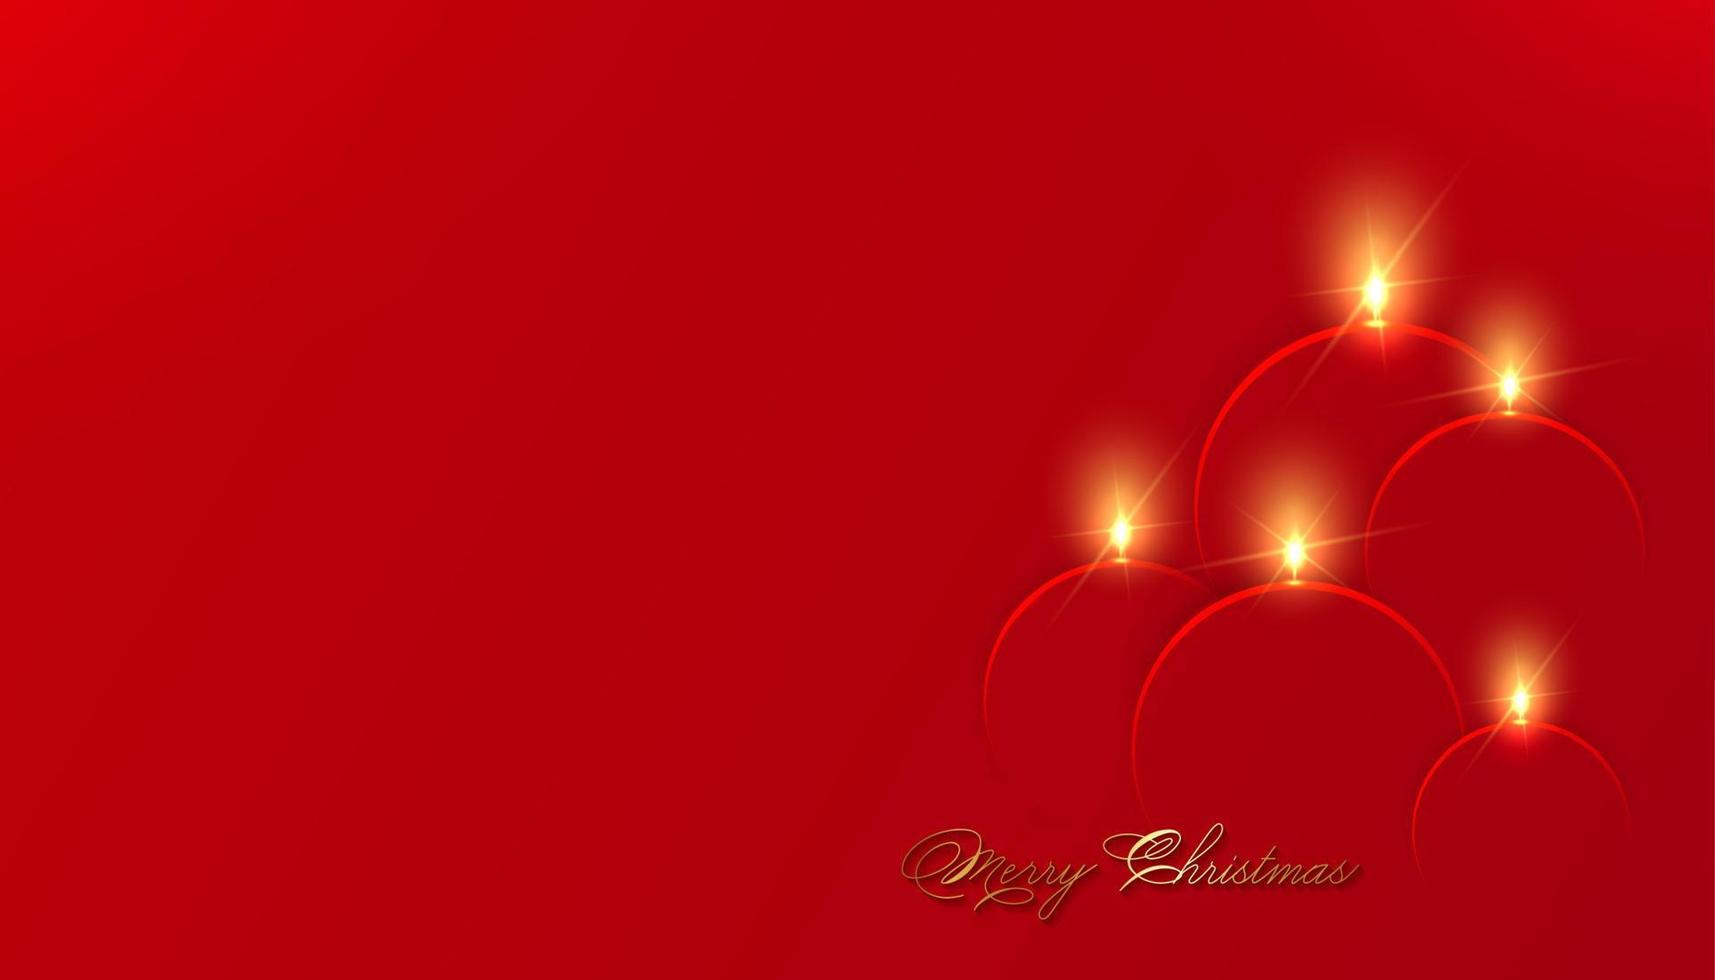 Weihnachtskerzen in rotem Papier schneiden trendigen Handwerk Cartoon-Stil. festliche Einladung, neues Jahr modernes Design für Werbung, Branding-Hintergrund-Grußkarte, Cover, Poster, Banner. Vektor-Illustration vektor